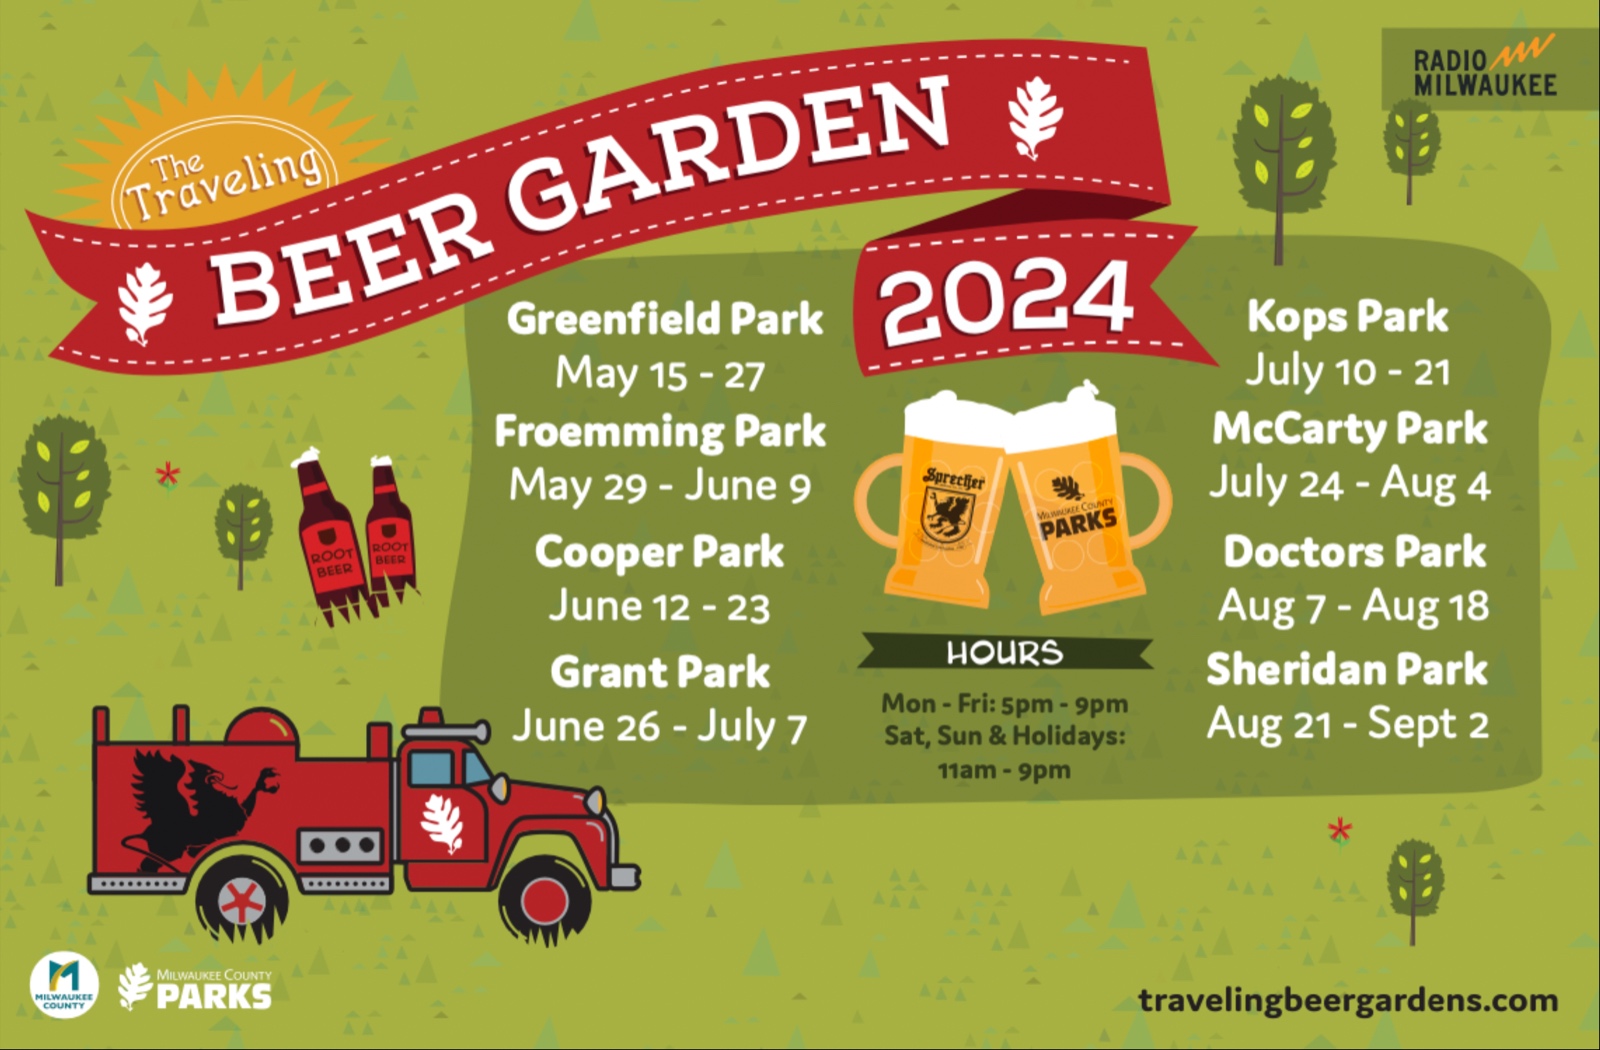 Traveling Beer Garden schedule